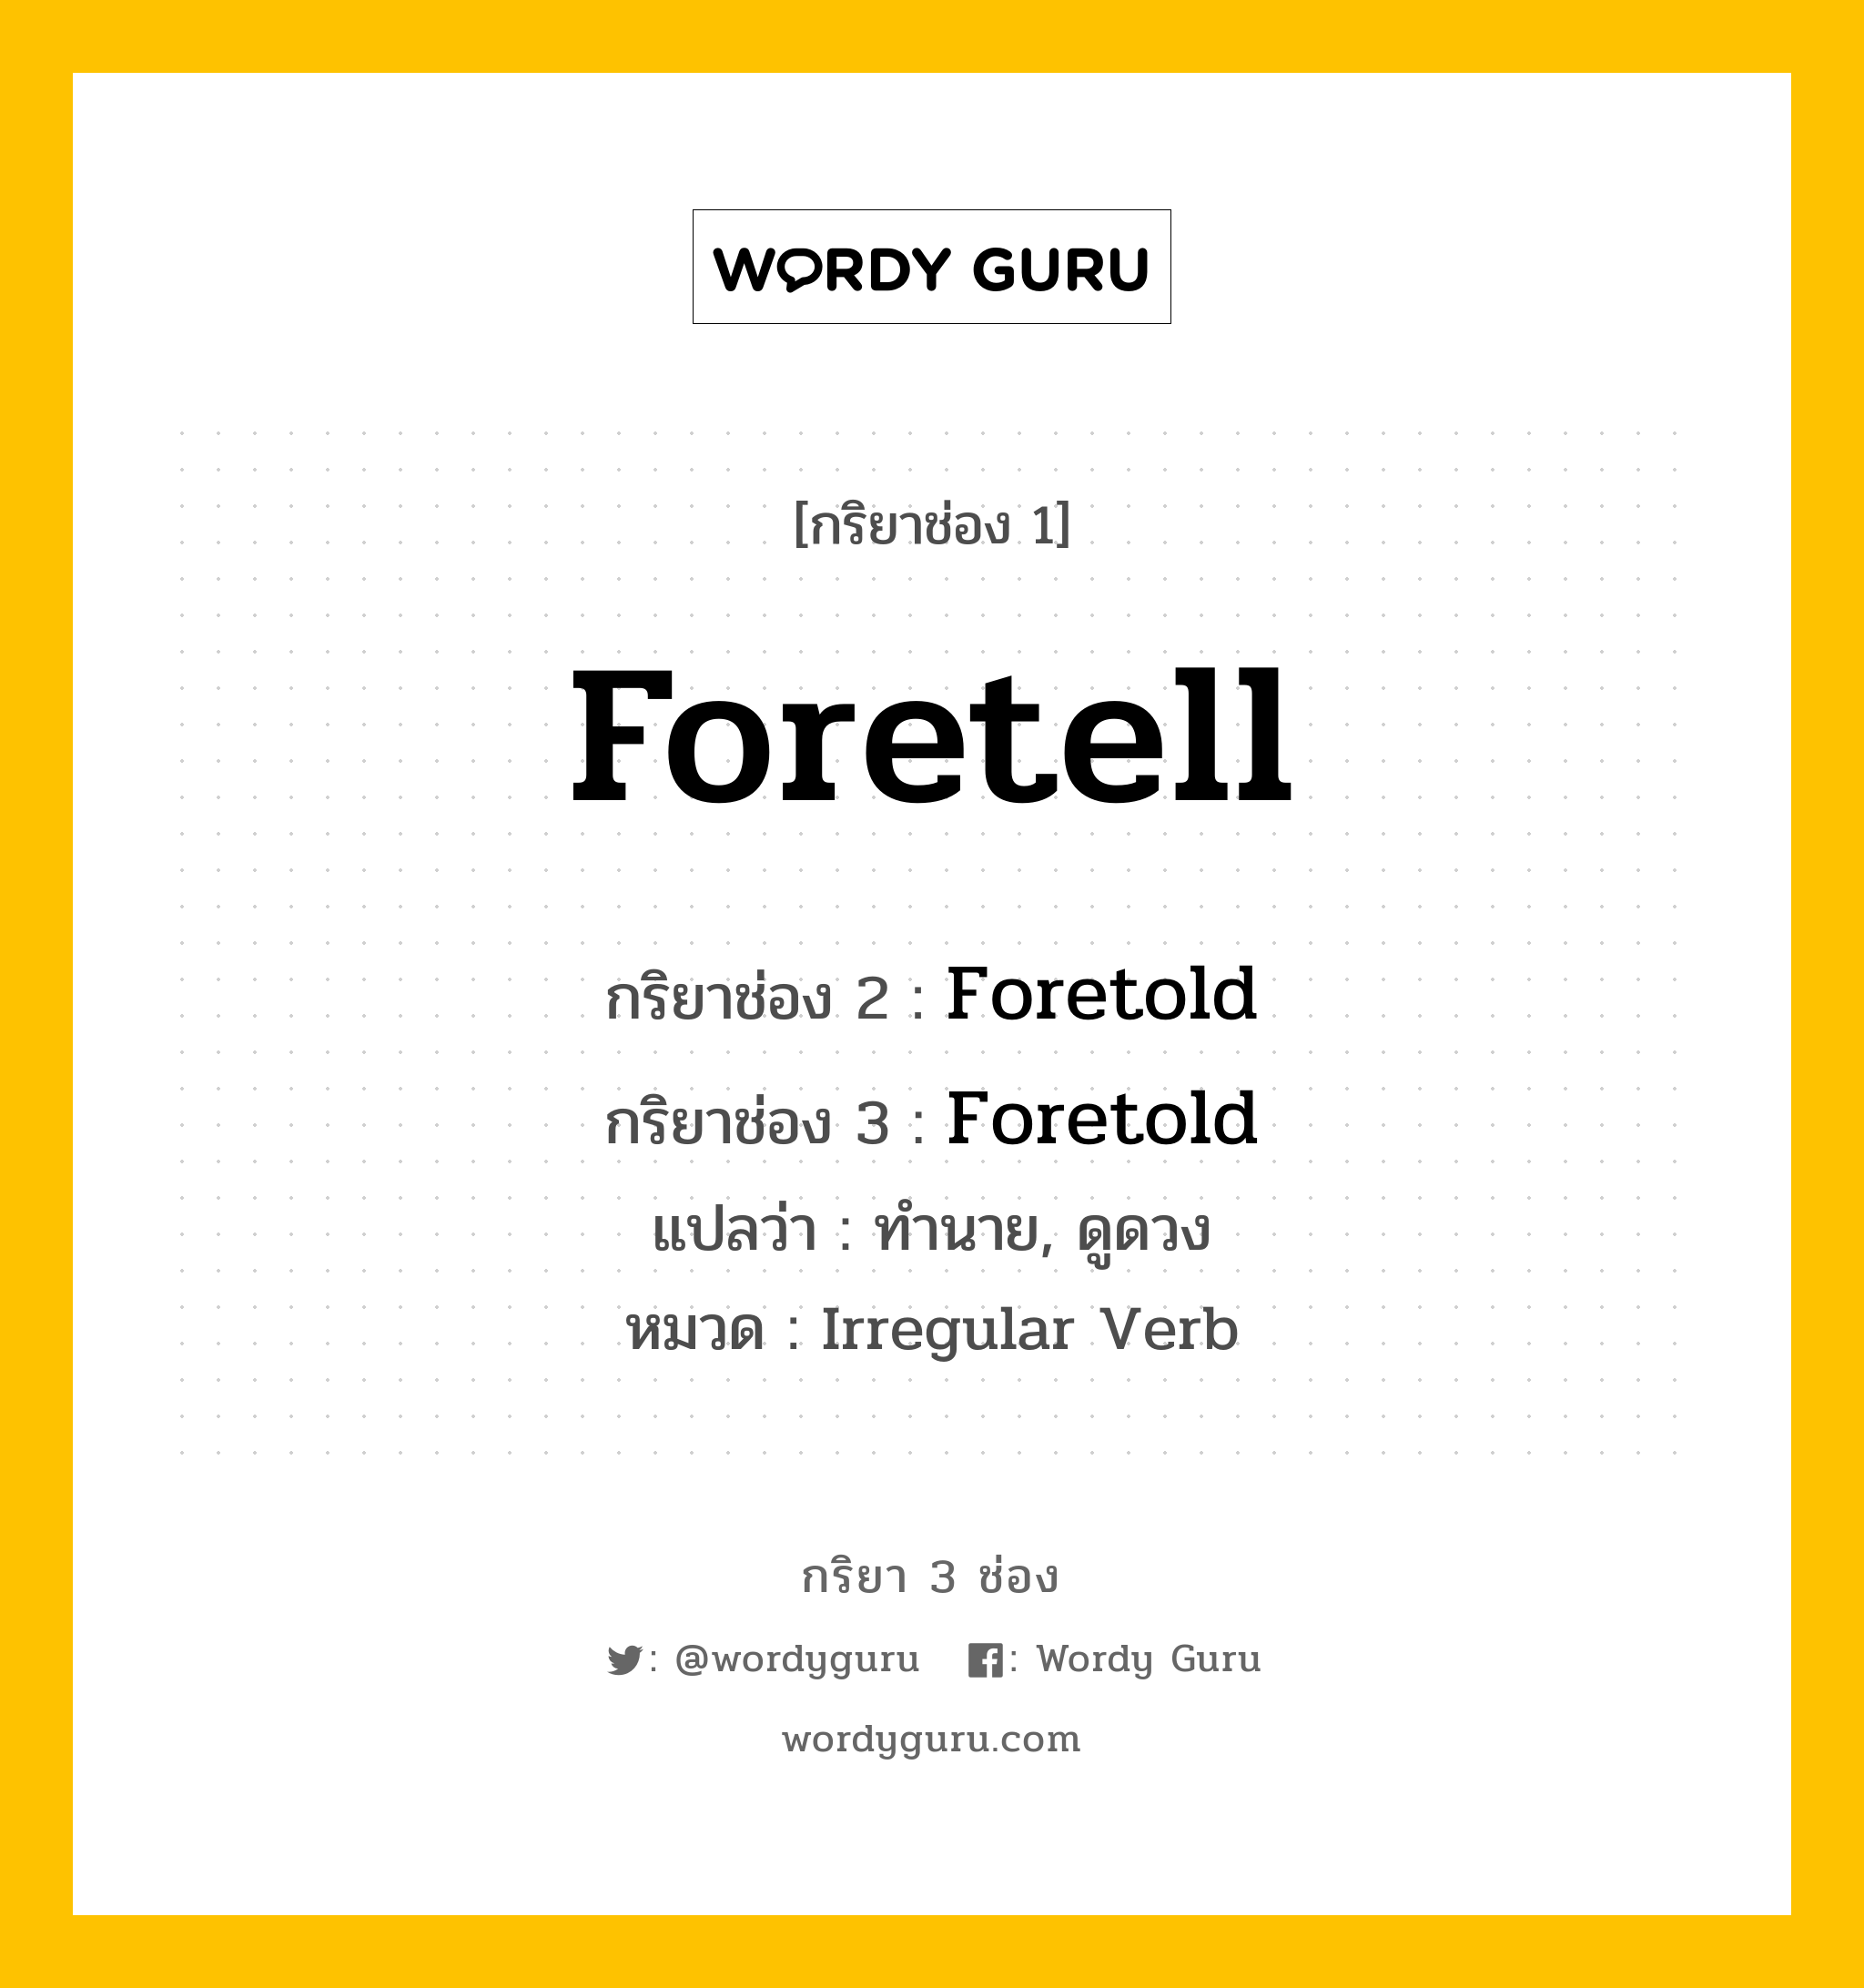 กริยา 3 ช่อง ของ Foretell คืออะไร? มาดูคำอ่าน คำแปลกันเลย, กริยาช่อง 1 Foretell กริยาช่อง 2 Foretold กริยาช่อง 3 Foretold แปลว่า ทำนาย, ดูดวง หมวด Irregular Verb หมวด Irregular Verb